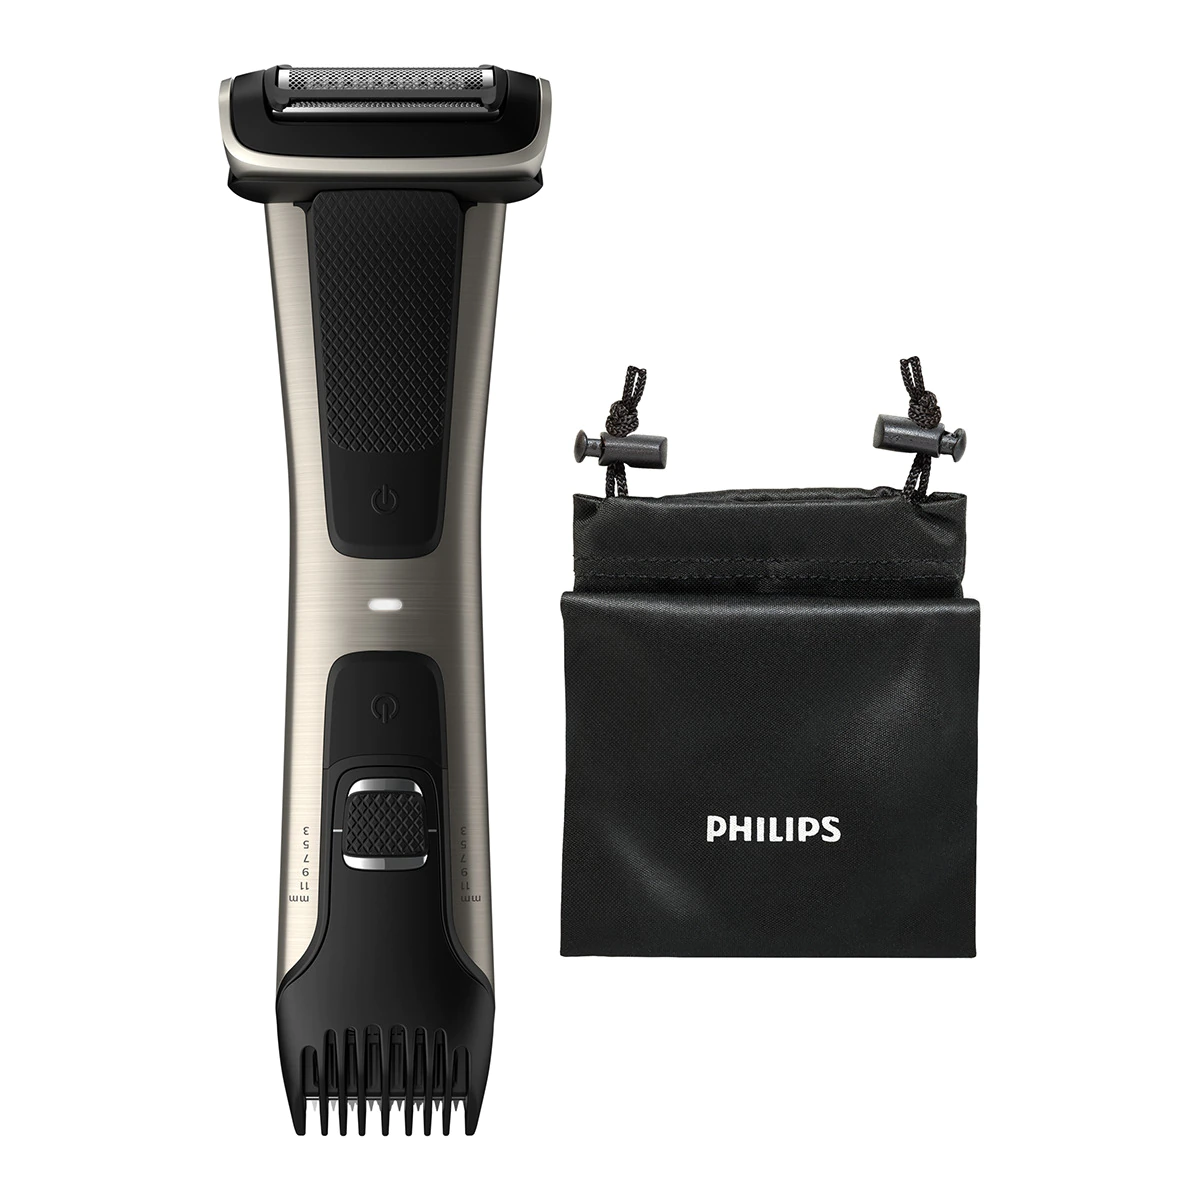 Afeitadora corporal Philips Bodygroom BG7025/15 recorta y afeita el cuerpo